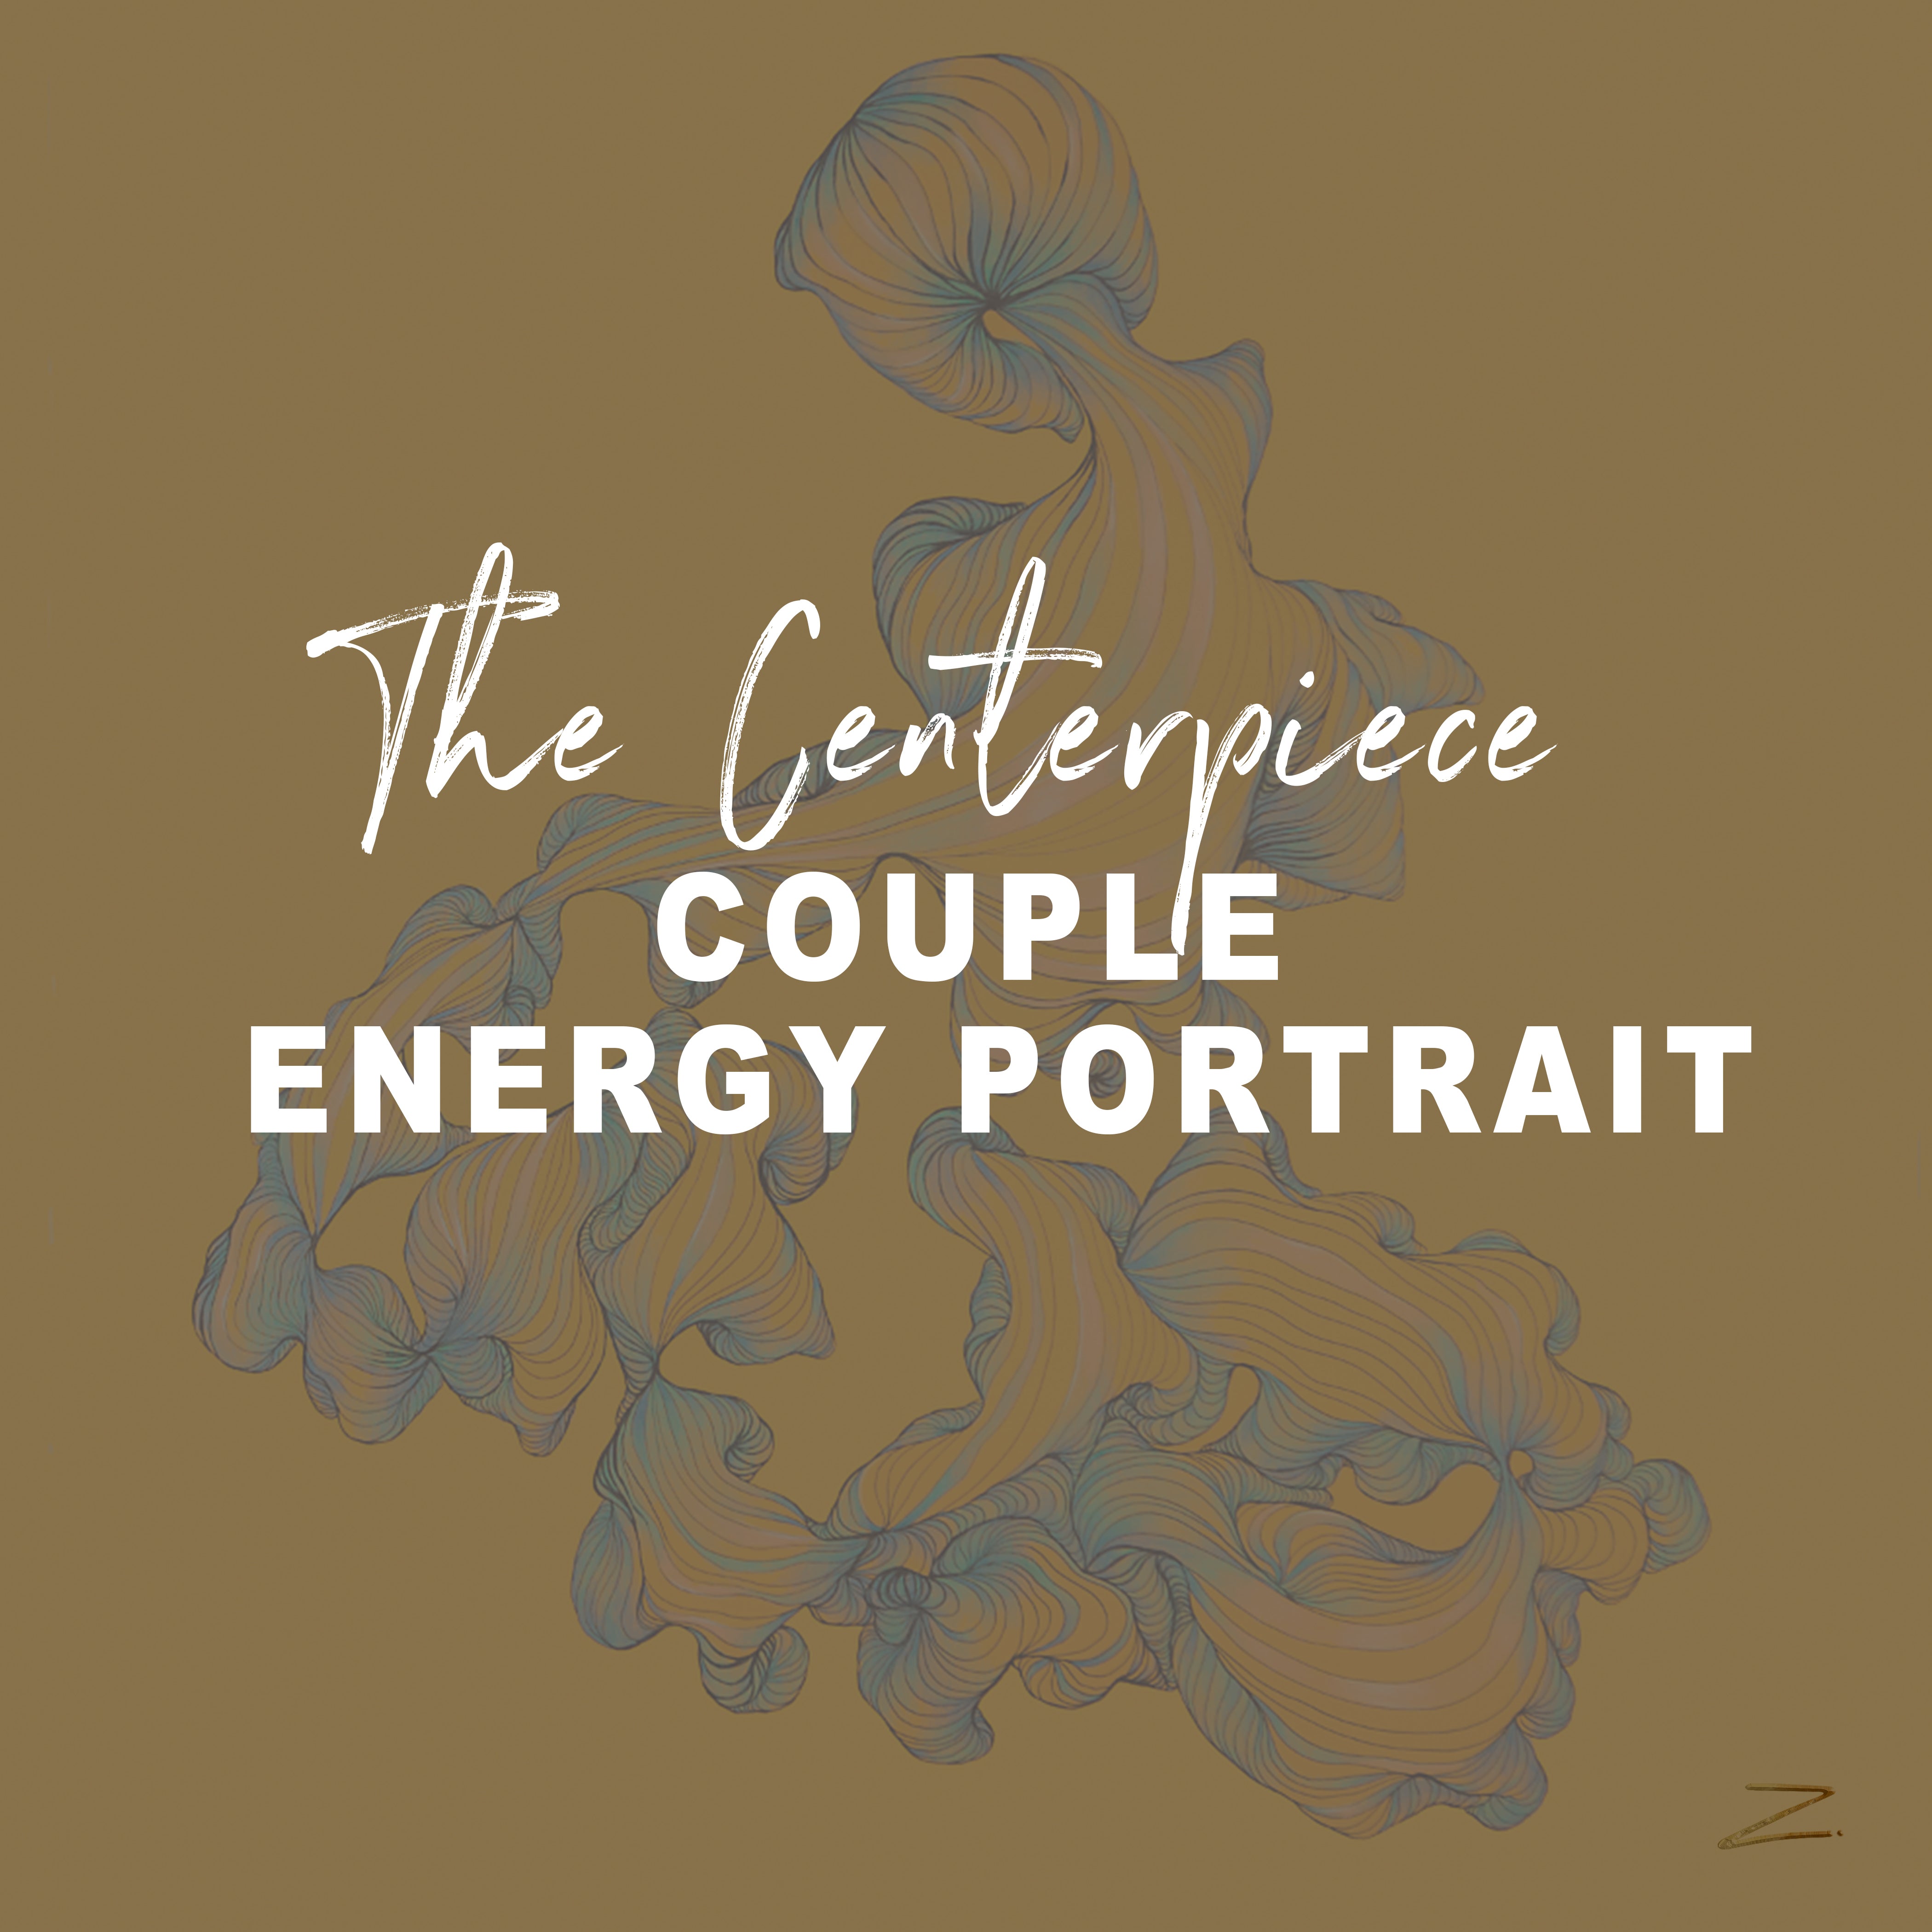 The Centerpiece Couple Energy Portrait 40" x 60"